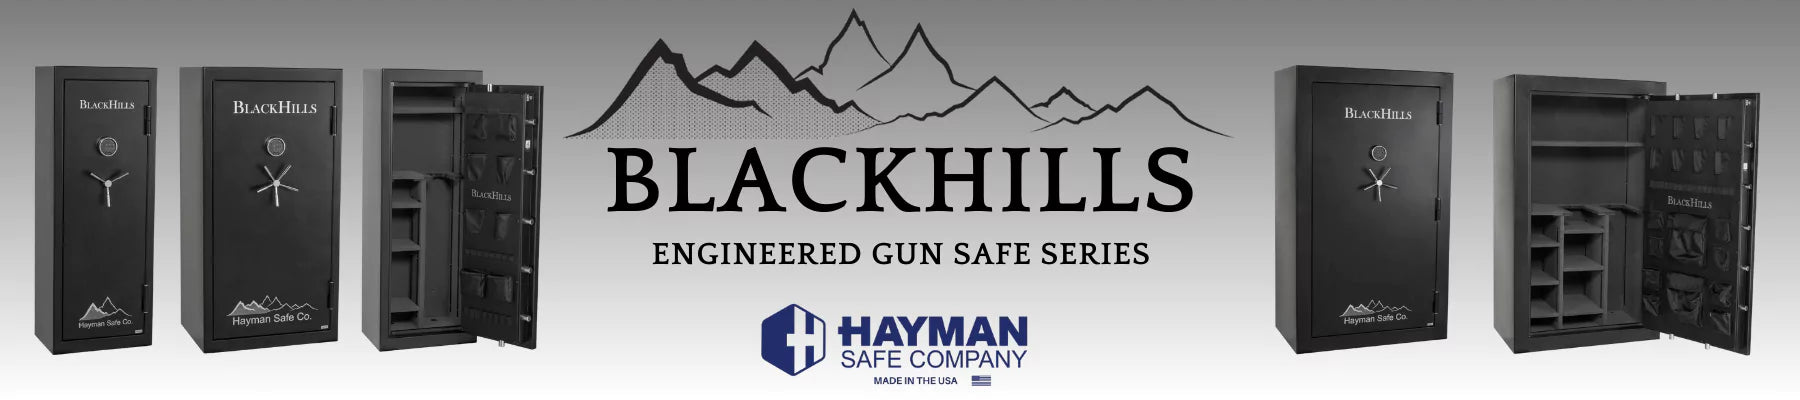 Hayman BlackHills Gun Safe Collection page header image